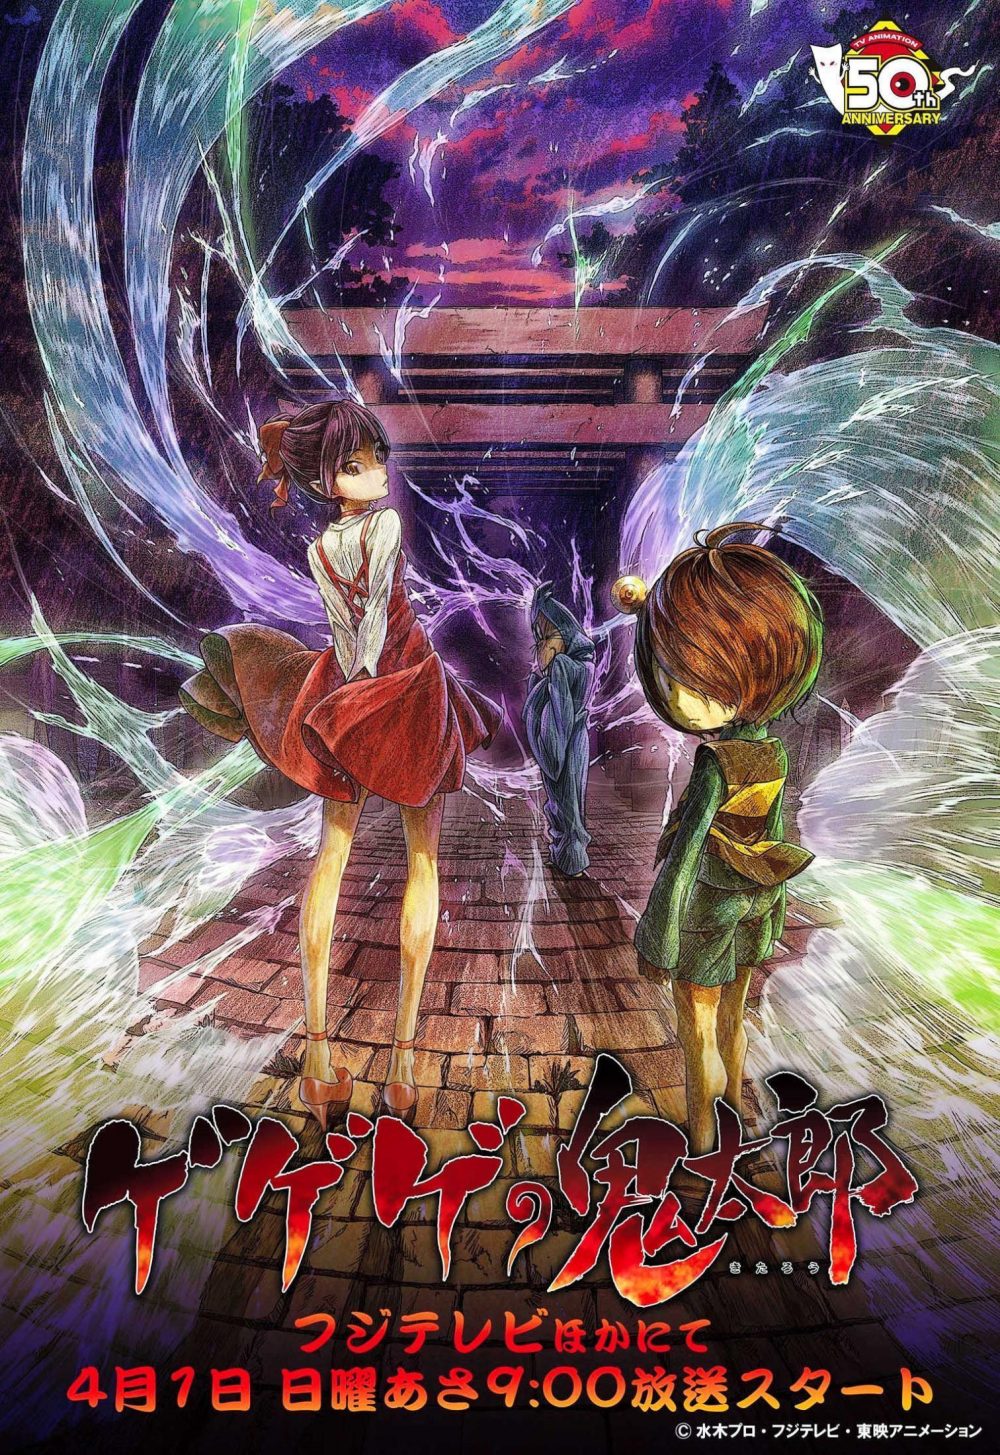 Nuevo anime de Gegege no Kitarou en Abril (trailer) - main visual